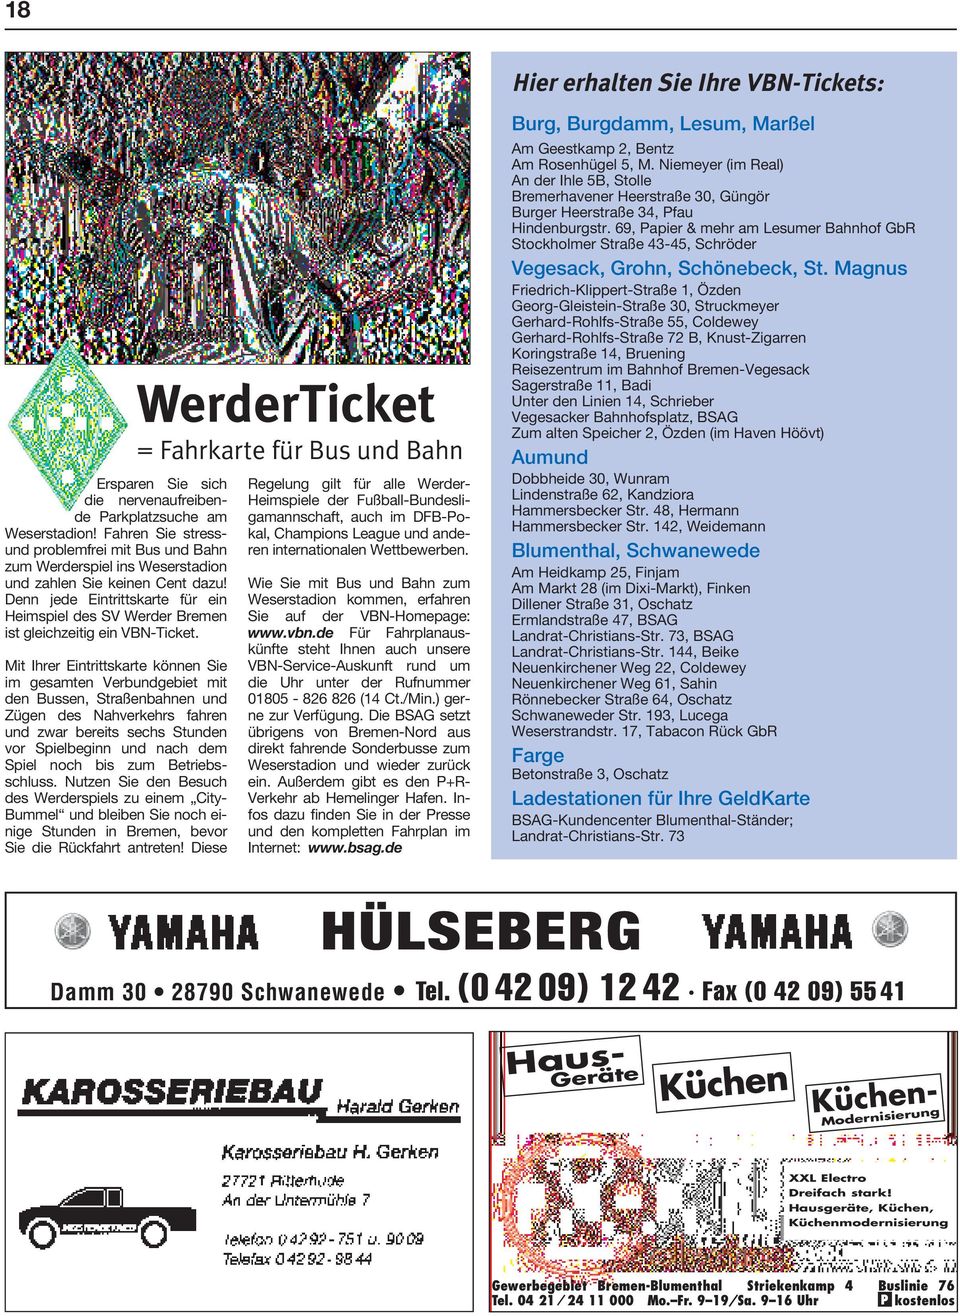 Denn jede Eintrittskarte für ein Heimspiel des SV Werder Bremen ist gleichzeitig ein VBN-Ticket.